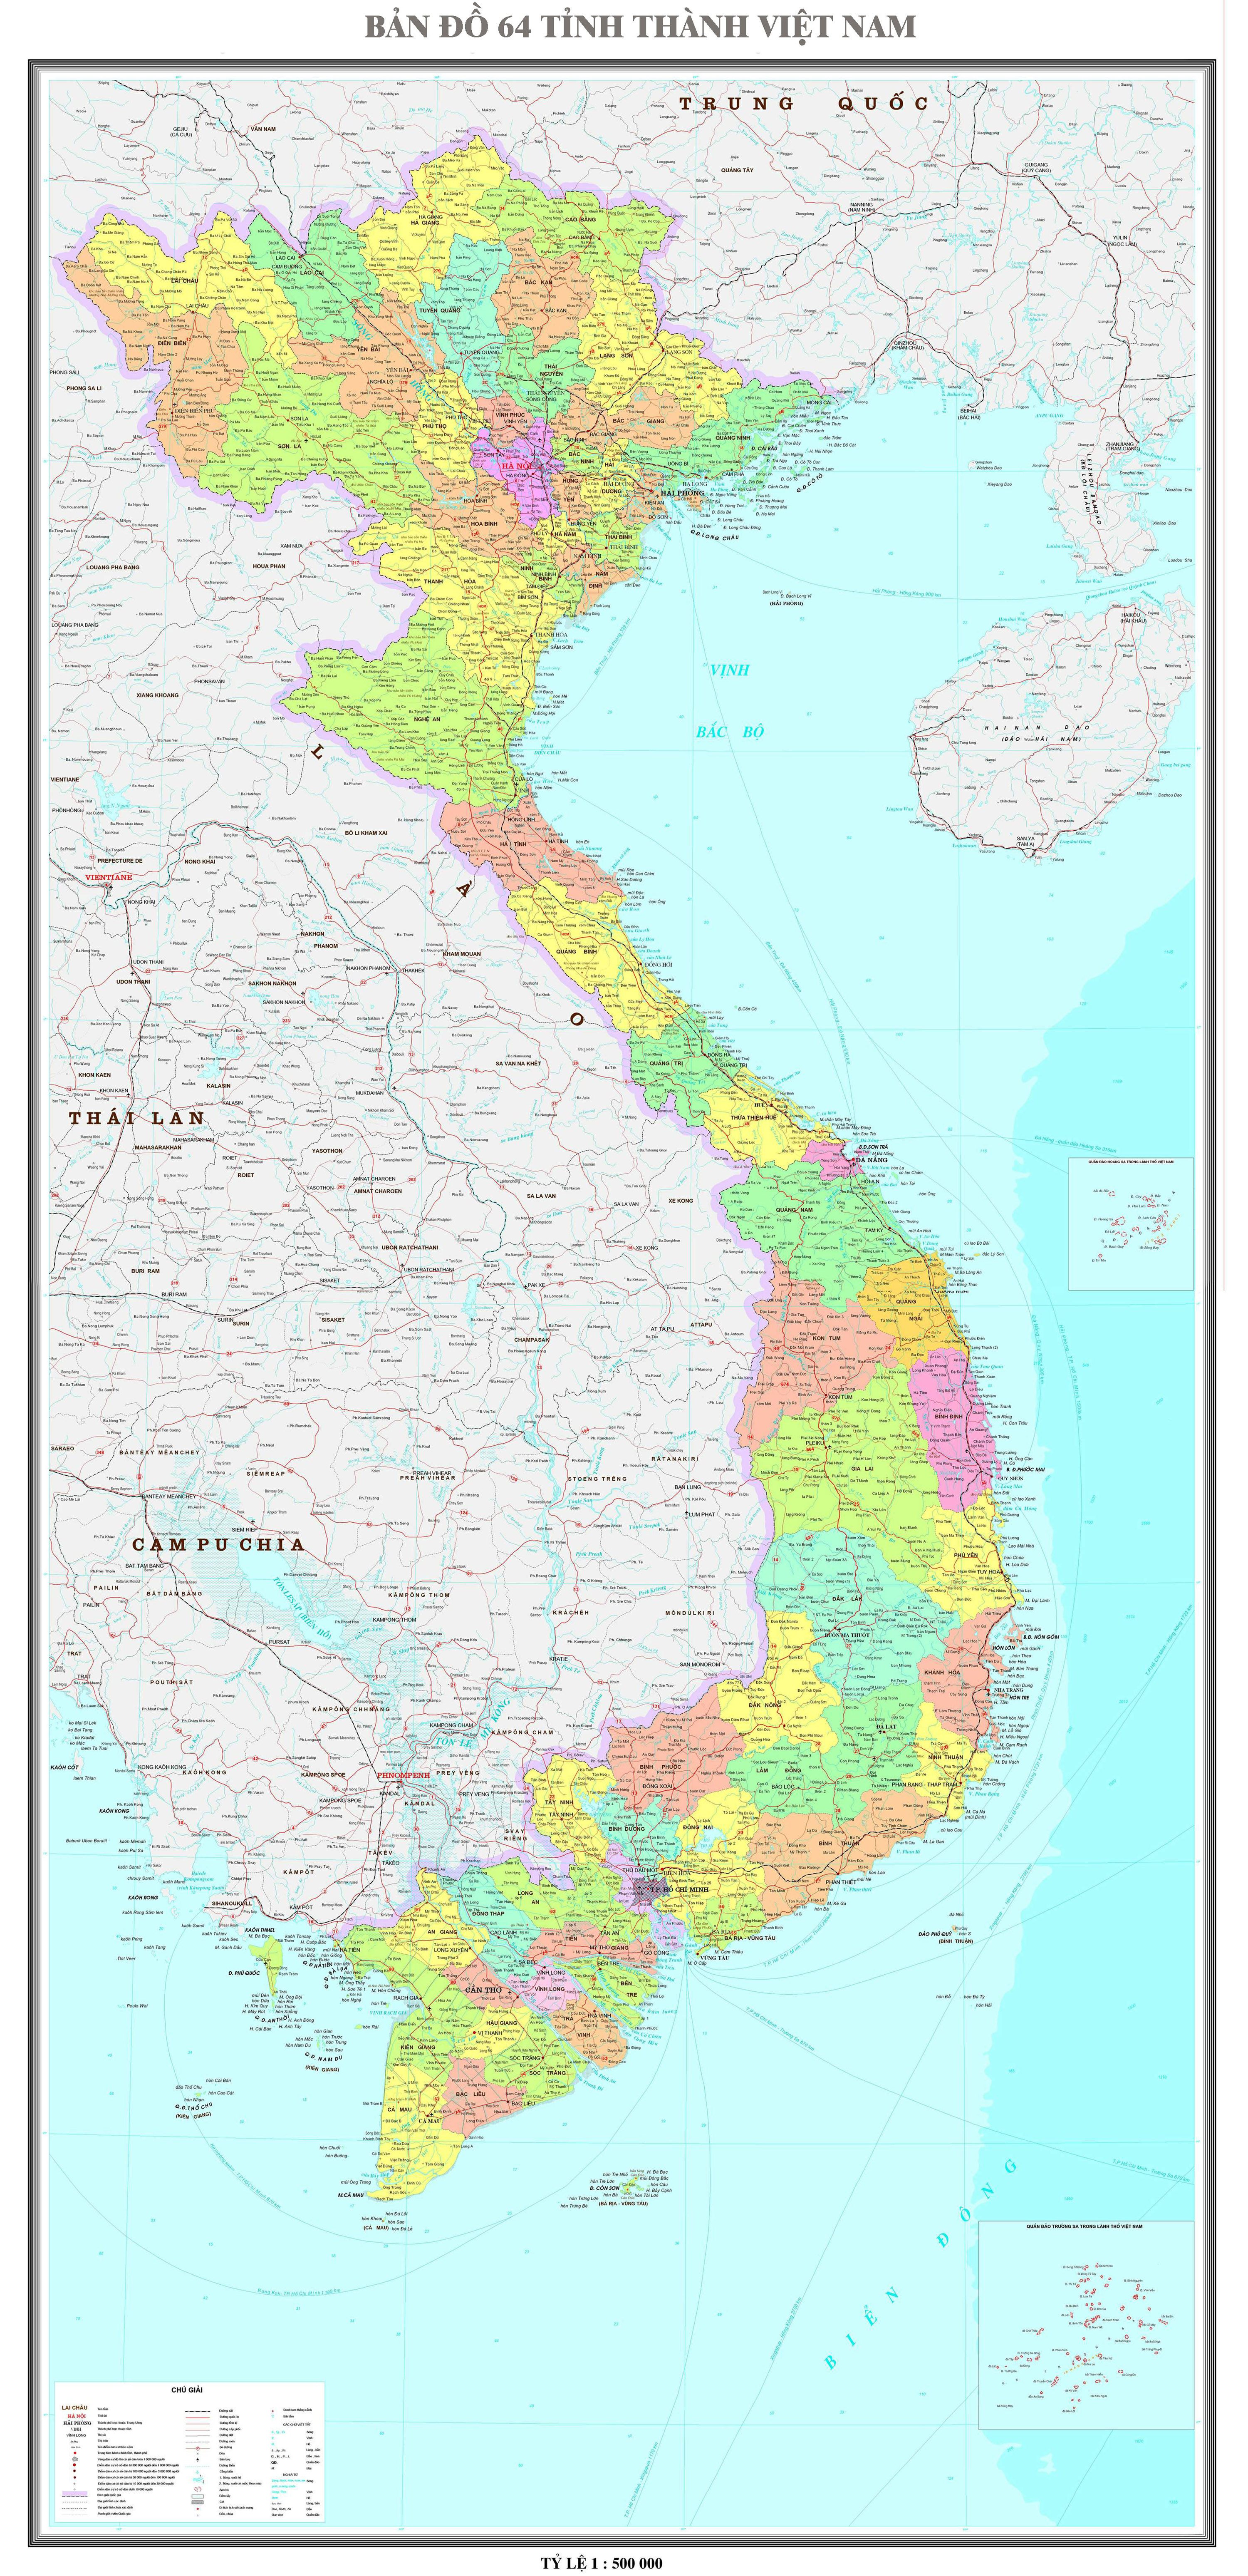  Bản đồ 64 tỉnh thành Việt Nam